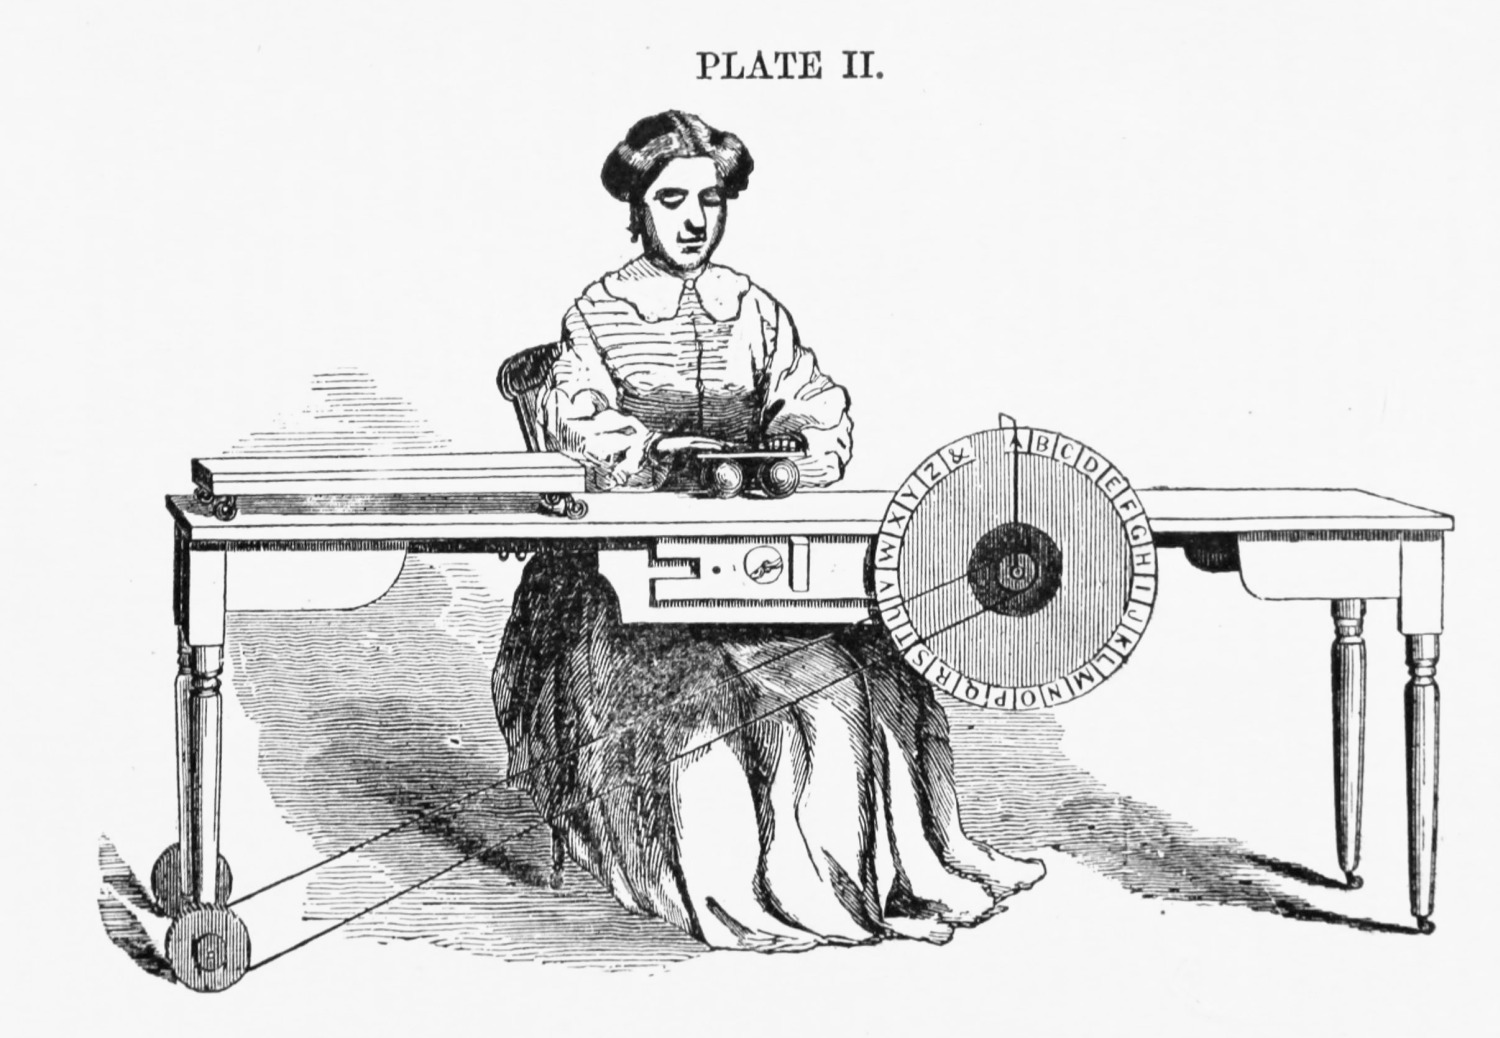 Plate II